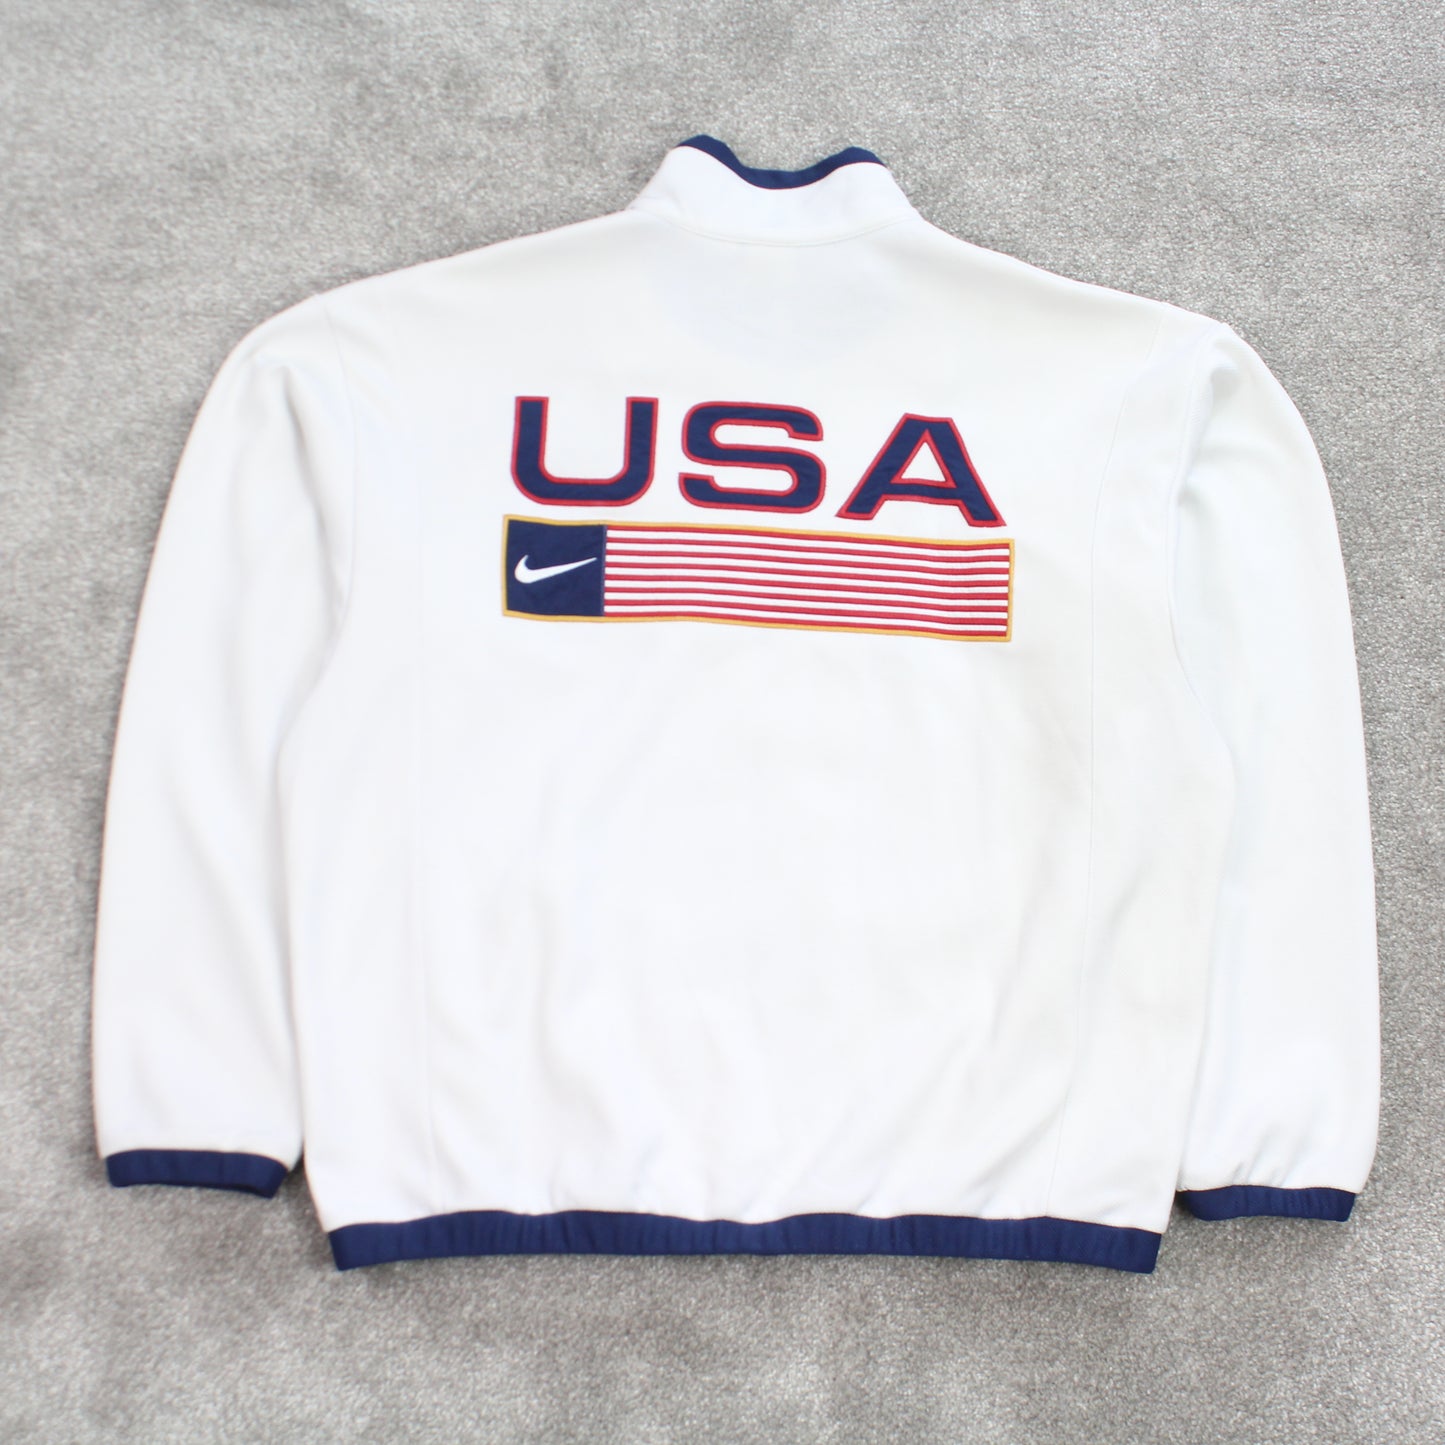 SUPER RARE Vintage 1990s Nike USA Jacket White - (L)